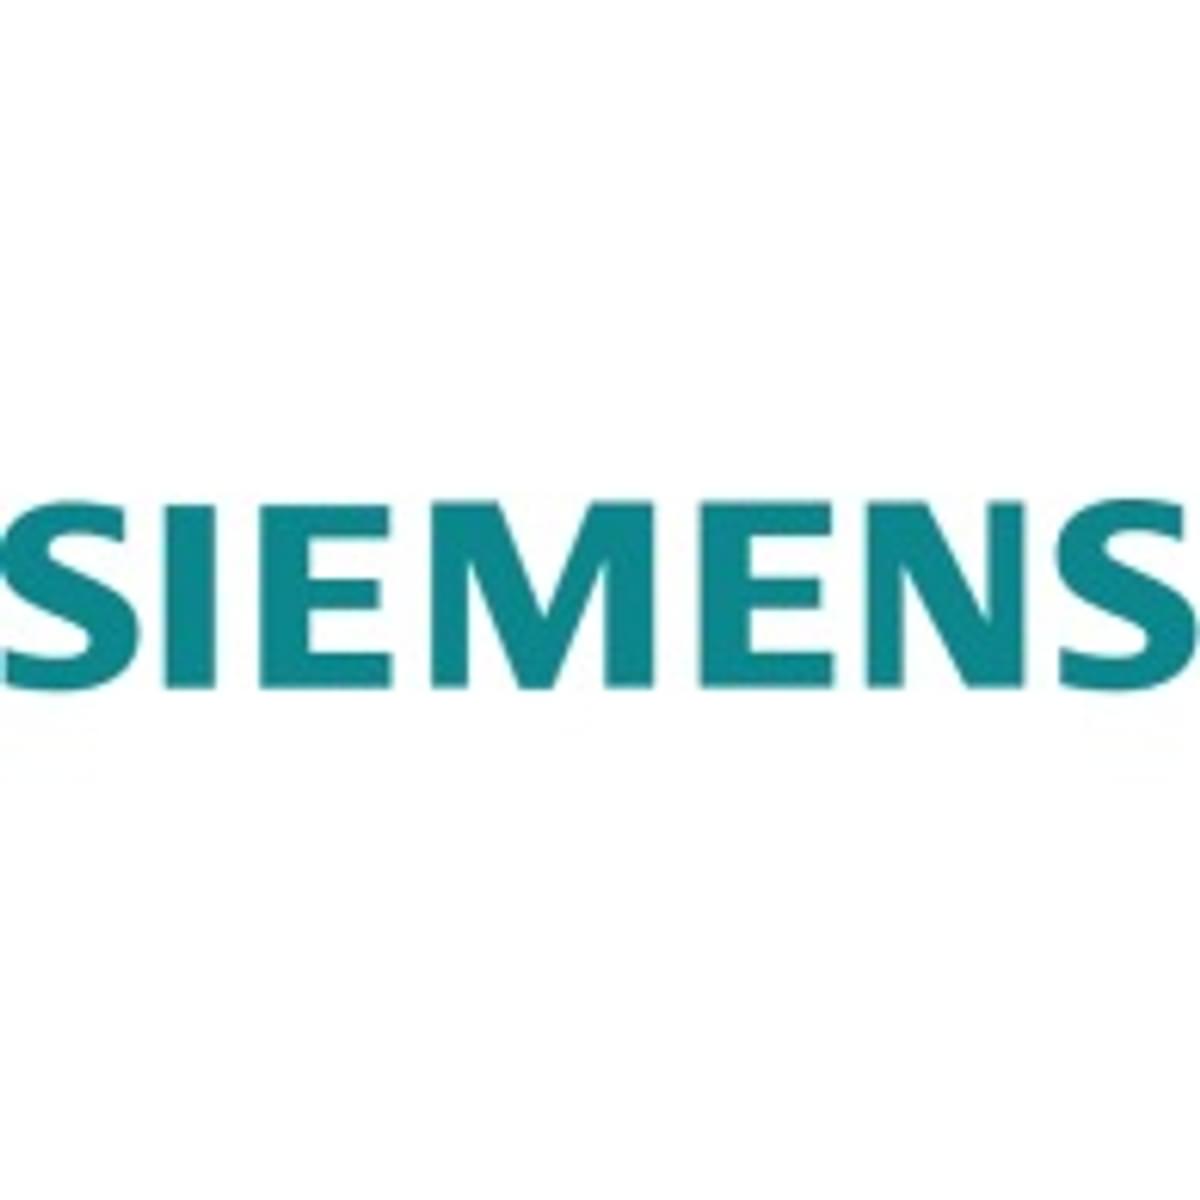 Siemens koopt Edge technologie van Pixeom image